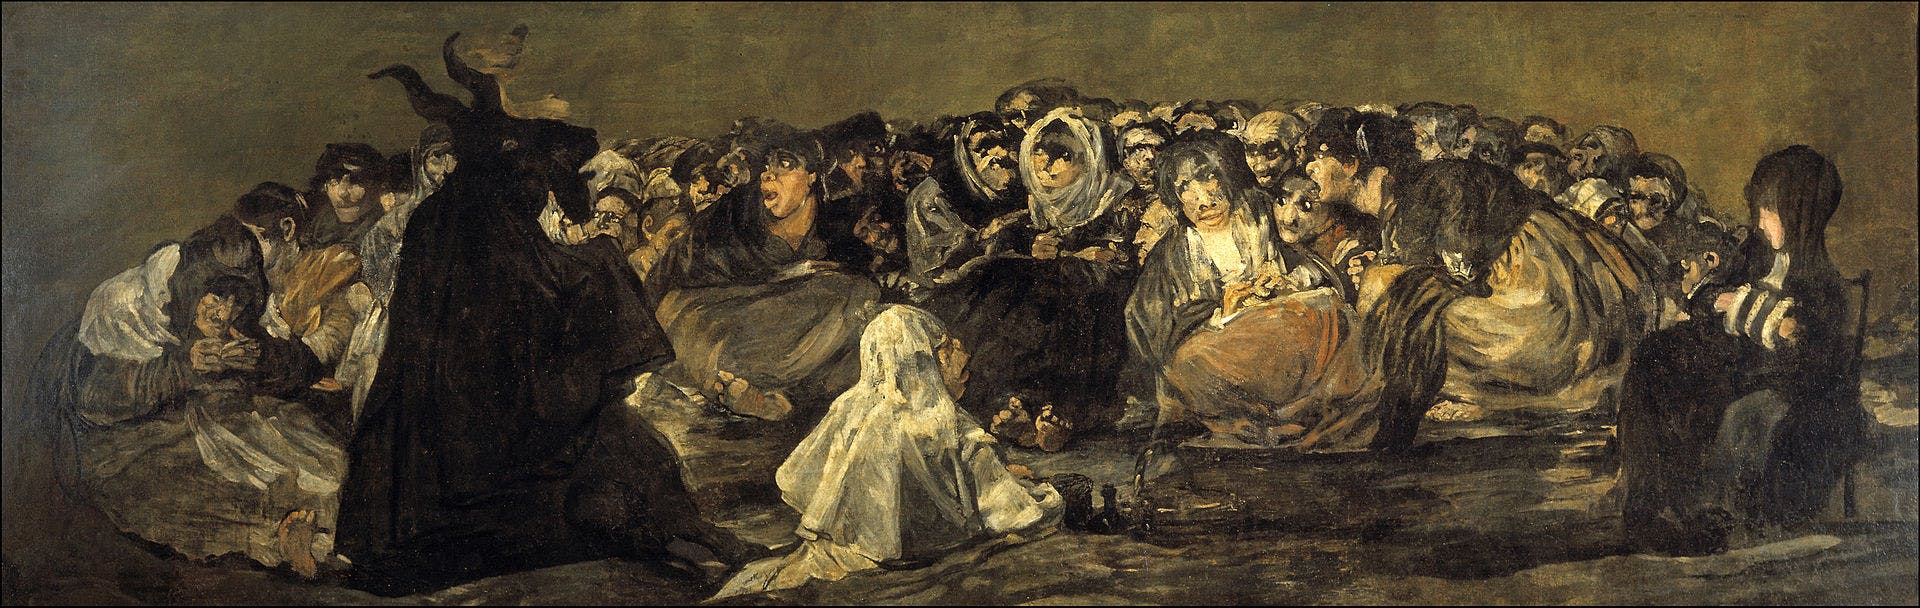 Aquelarre de Francisco de Goya